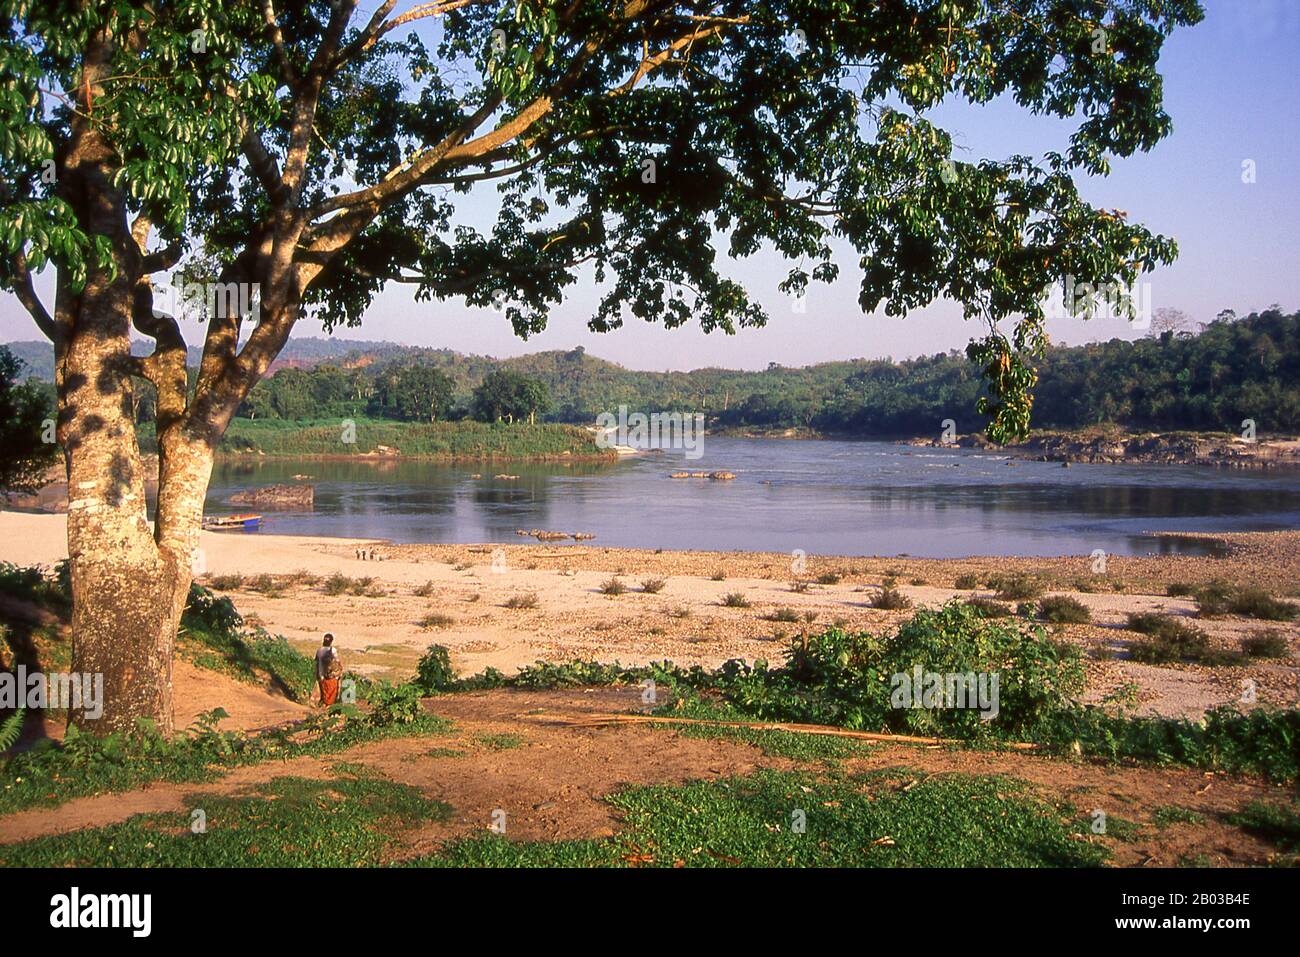 Il fiume Irrawaddy o Ayeyarwady, anche fart Ayeyarwaddy è un fiume che scorre da nord a sud attraverso la Birmania (Myanmar). È il fiume più grande del paese e il più importante canale commerciale. Originario della confluenza dei fiumi N'mai e Mali, scorre relativamente dritto Nord-Sud prima di svuotarsi attraverso il Delta Irrawaddy nel Mare delle Andamane. La sua area di drenaggio di circa 255,081 km² copre gran parte della Birmania. Dopo il poema di Rudyard Kipling, a volte viene chiamato "The Road to Mandalay". Foto Stock